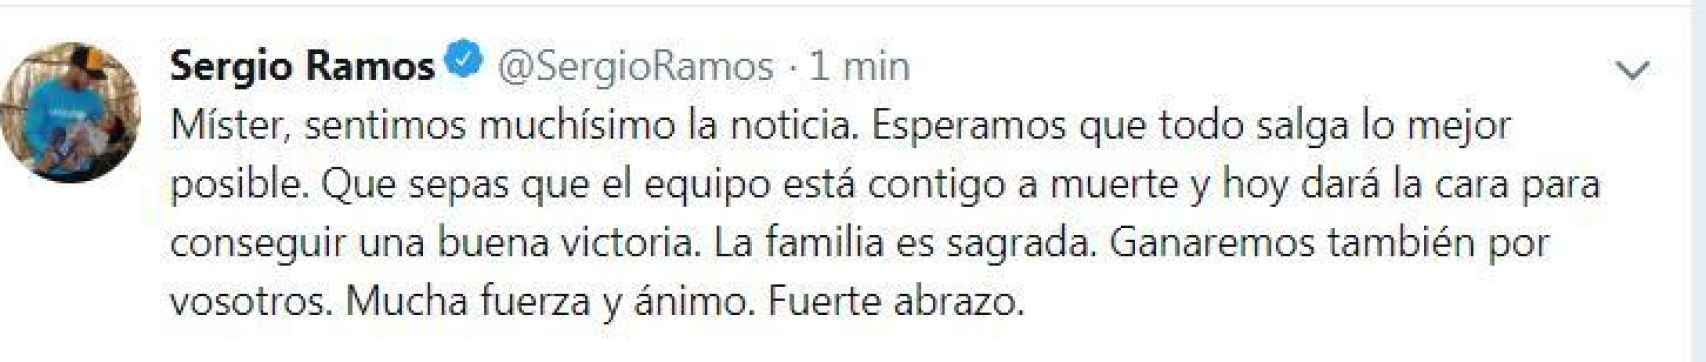 Mensaje de Sergio Ramos a Luis Enrique